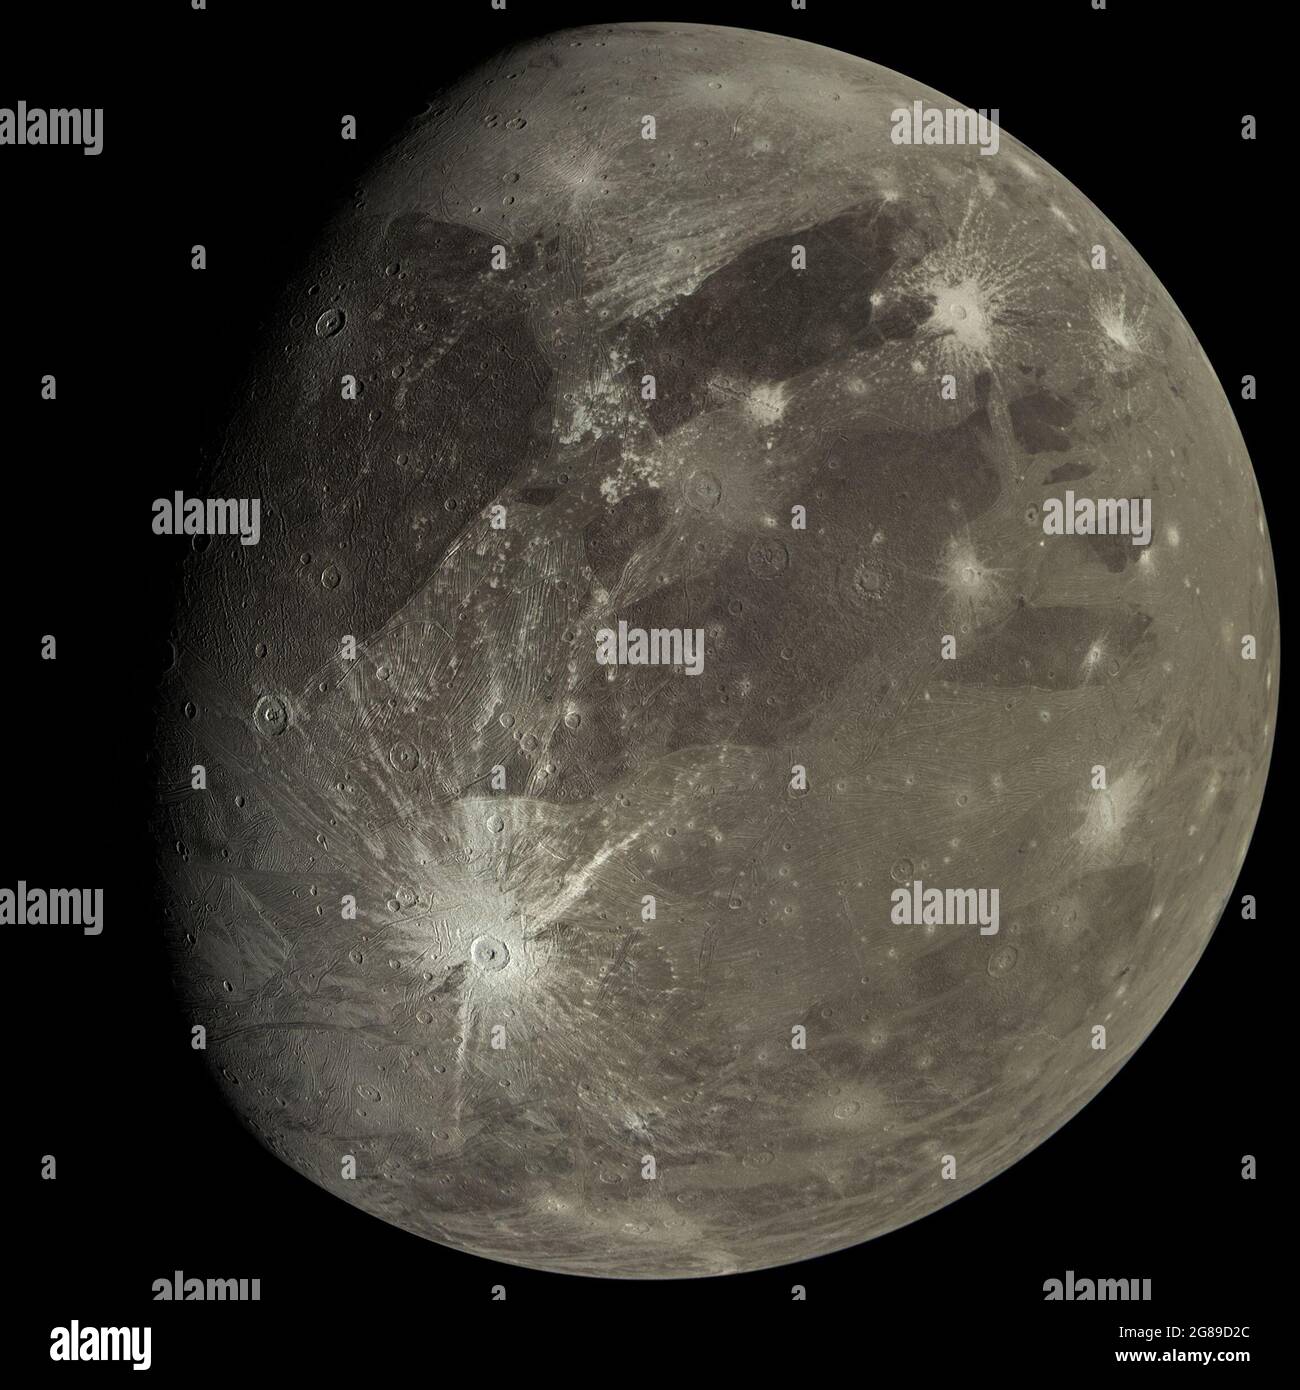 Juli 2021. Am 7. Juni 2021 flog die Juno-Sonde der NASA näher an Jupiters größten Mond, Ganymede, als jede andere Raumsonde seit mehr als zwei Jahrzehnten, und bot dramatische Einblicke in die eisige Kugel und den Gasriesen. Der Vorbeiflug war der erste Nahaufnahme-Blick auf den Großmond seit dem letzten Vorbeiflug des NASA-Orbiters Galileo im Jahr 2000. Weniger als einen Tag später machte Juno seinen 34. Vorbeiflug von Jupiter und raste in weniger als drei Stunden über seine rauschende Atmosphäre von Pol zu Pol. NASA/UPI Credit: UPI/Alamy Live News Stockfoto